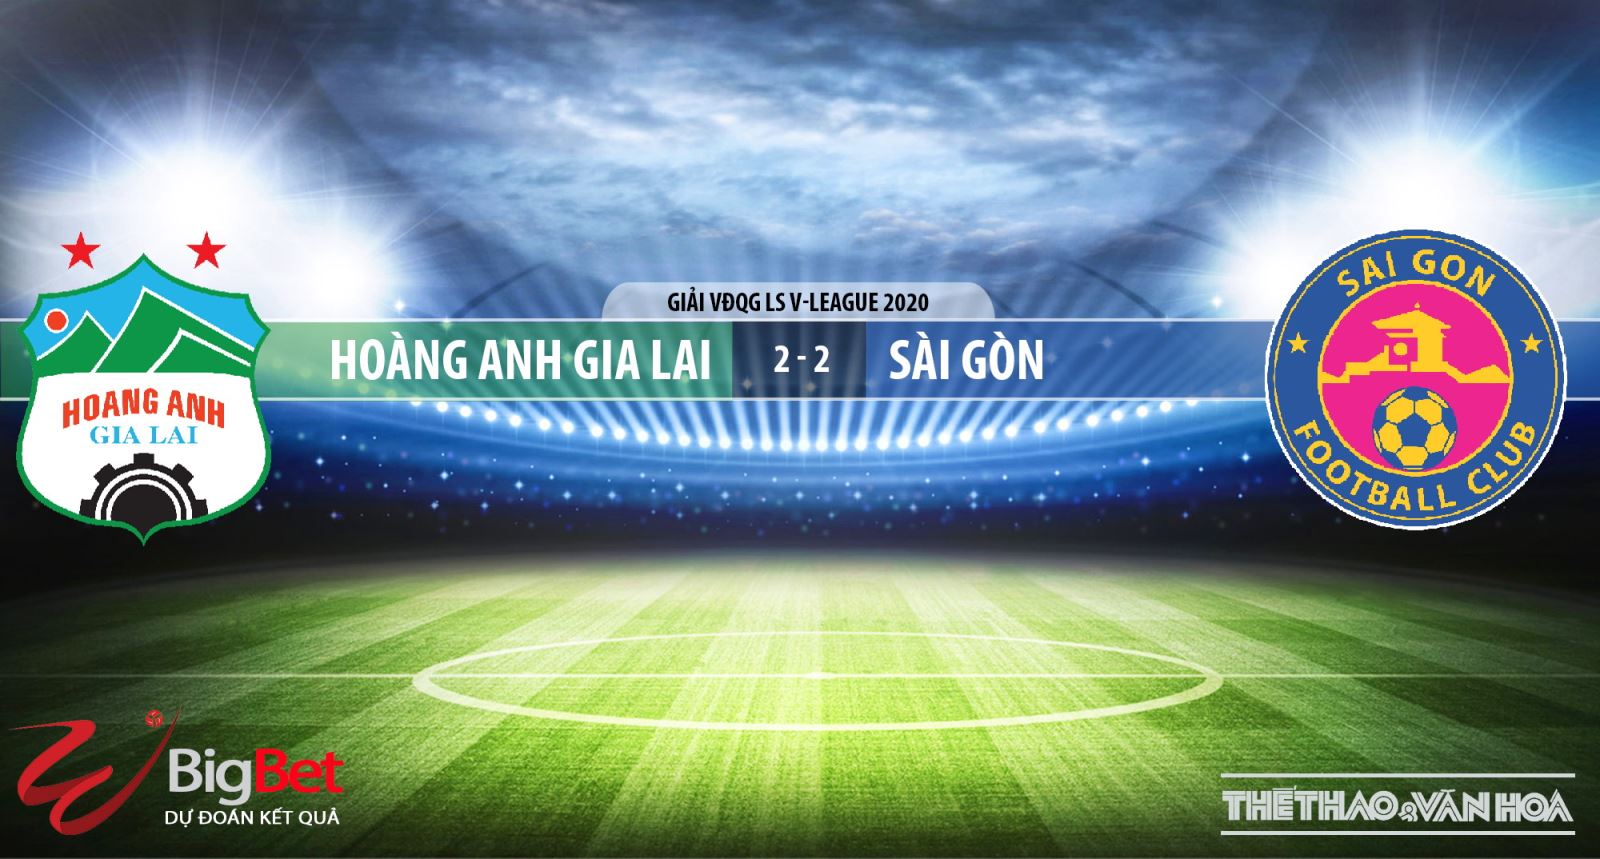 HAGL đấu với Sài Gòn, HAGL, Sài Gòn, kèo bóng đá, soi kèo bóng đá, nhận định, dự đoán, bóng đá, trực tiếp bóng đá